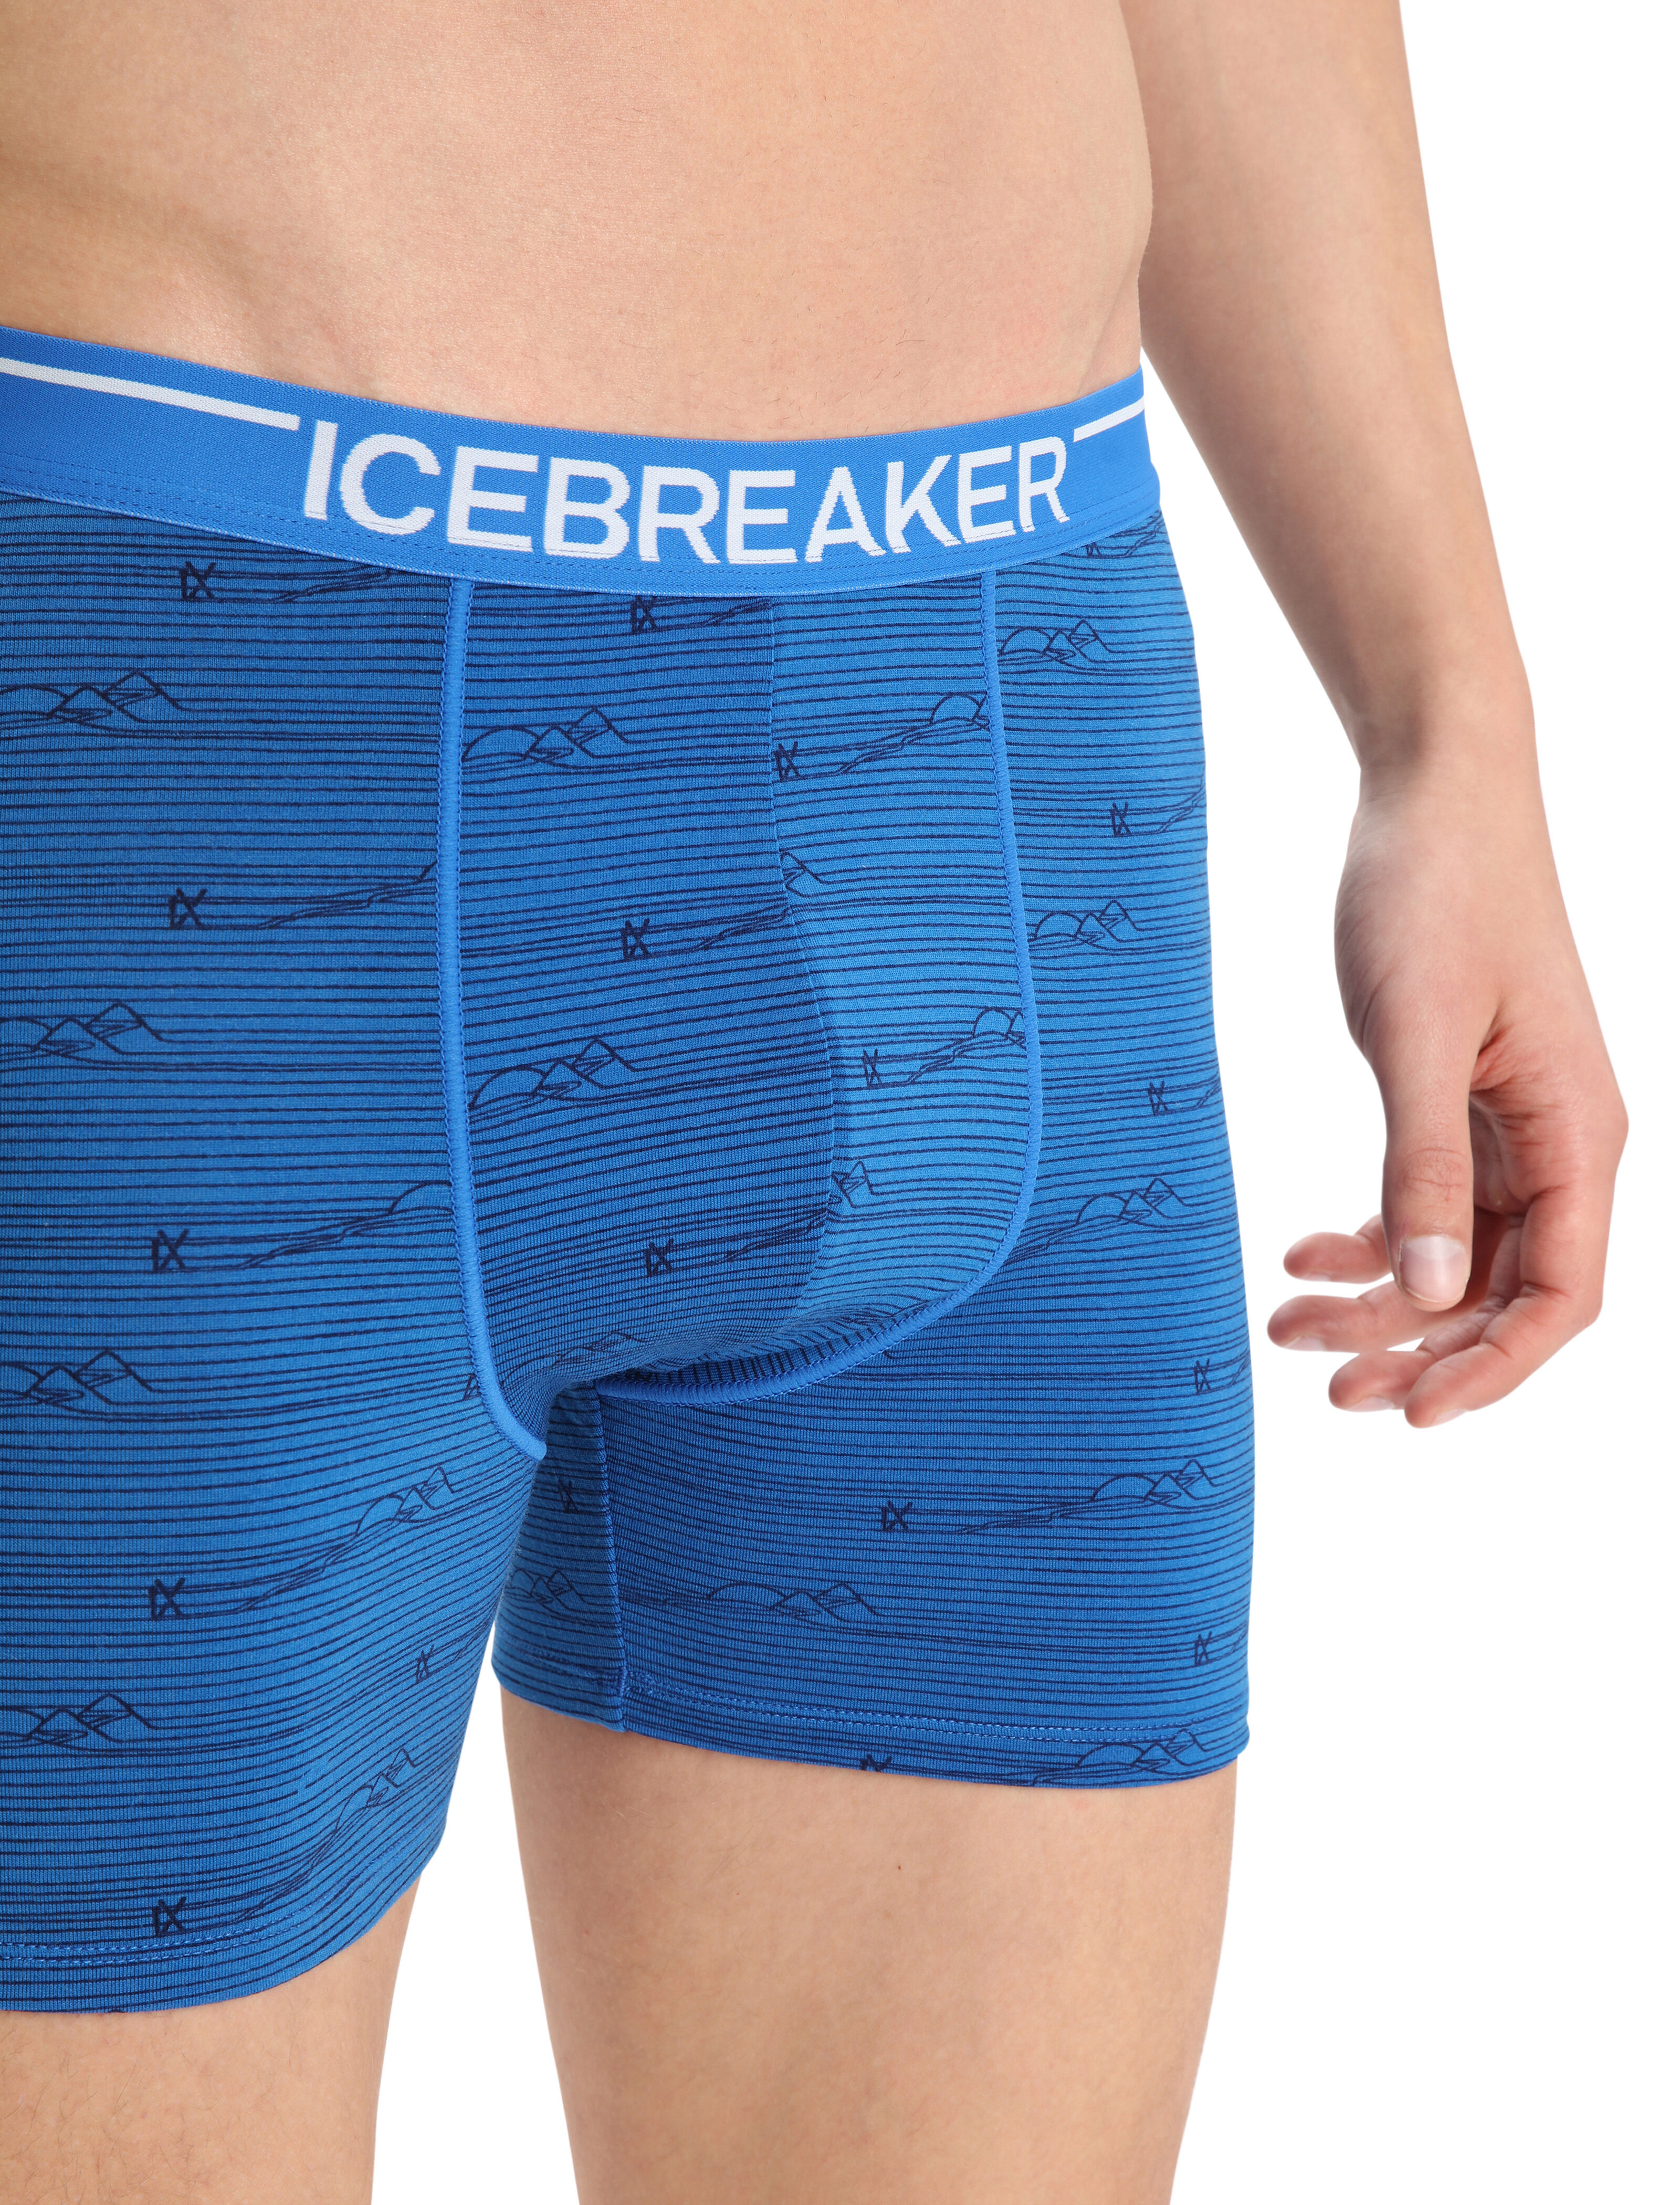 Icebreaker Anatomica Boxers Herren Shorts Boxershorts Unterhose hellgrau 